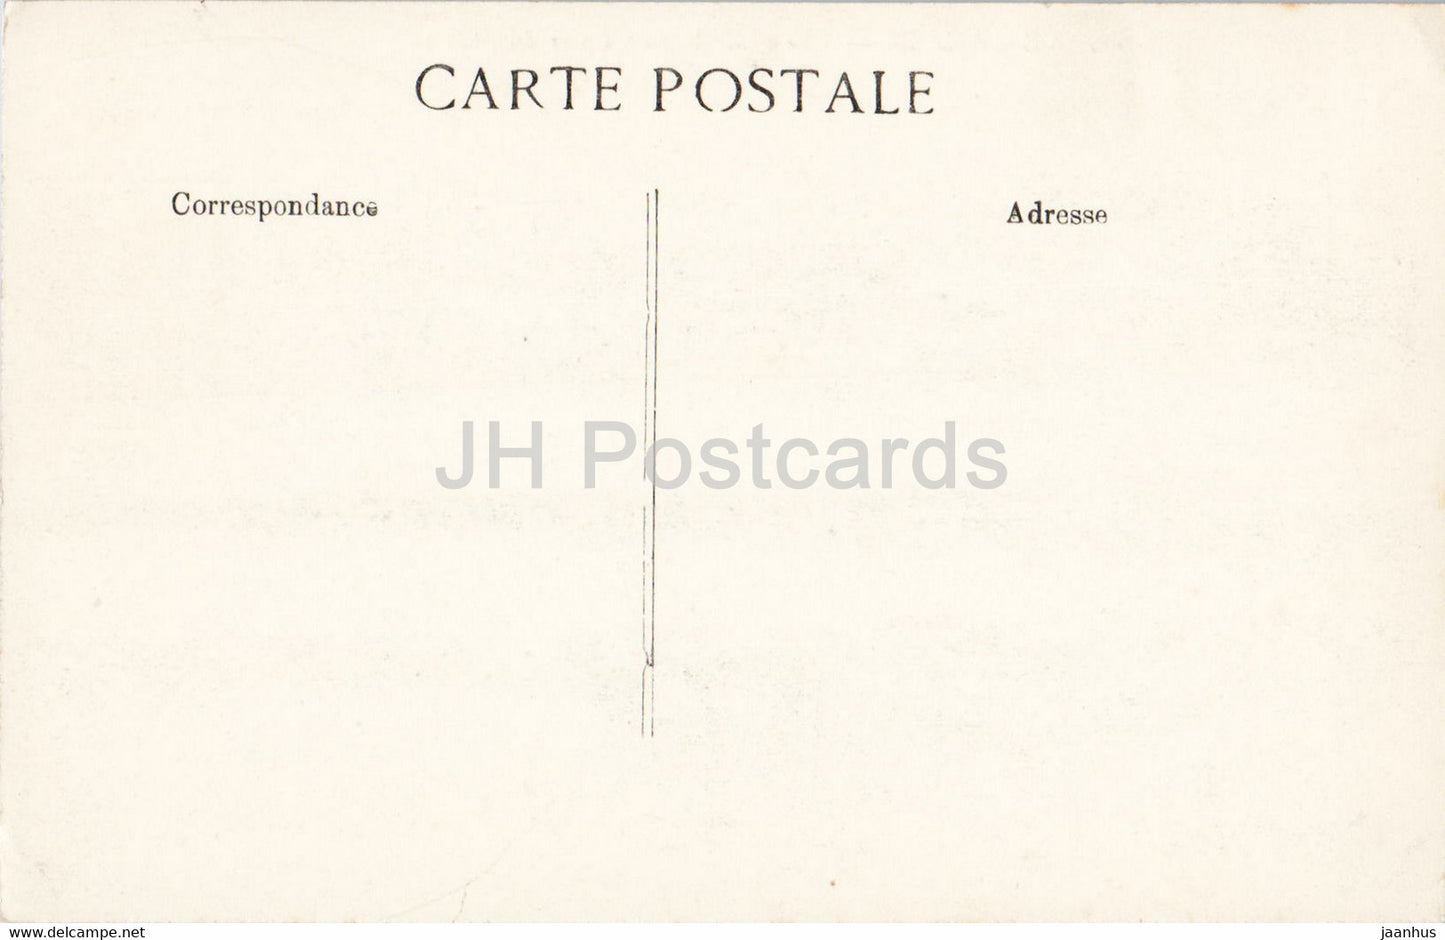 Versailles - Vue Generale du Parc et du Chateau - 16 - Illustration - alte Postkarte - Frankreich - unbenutzt